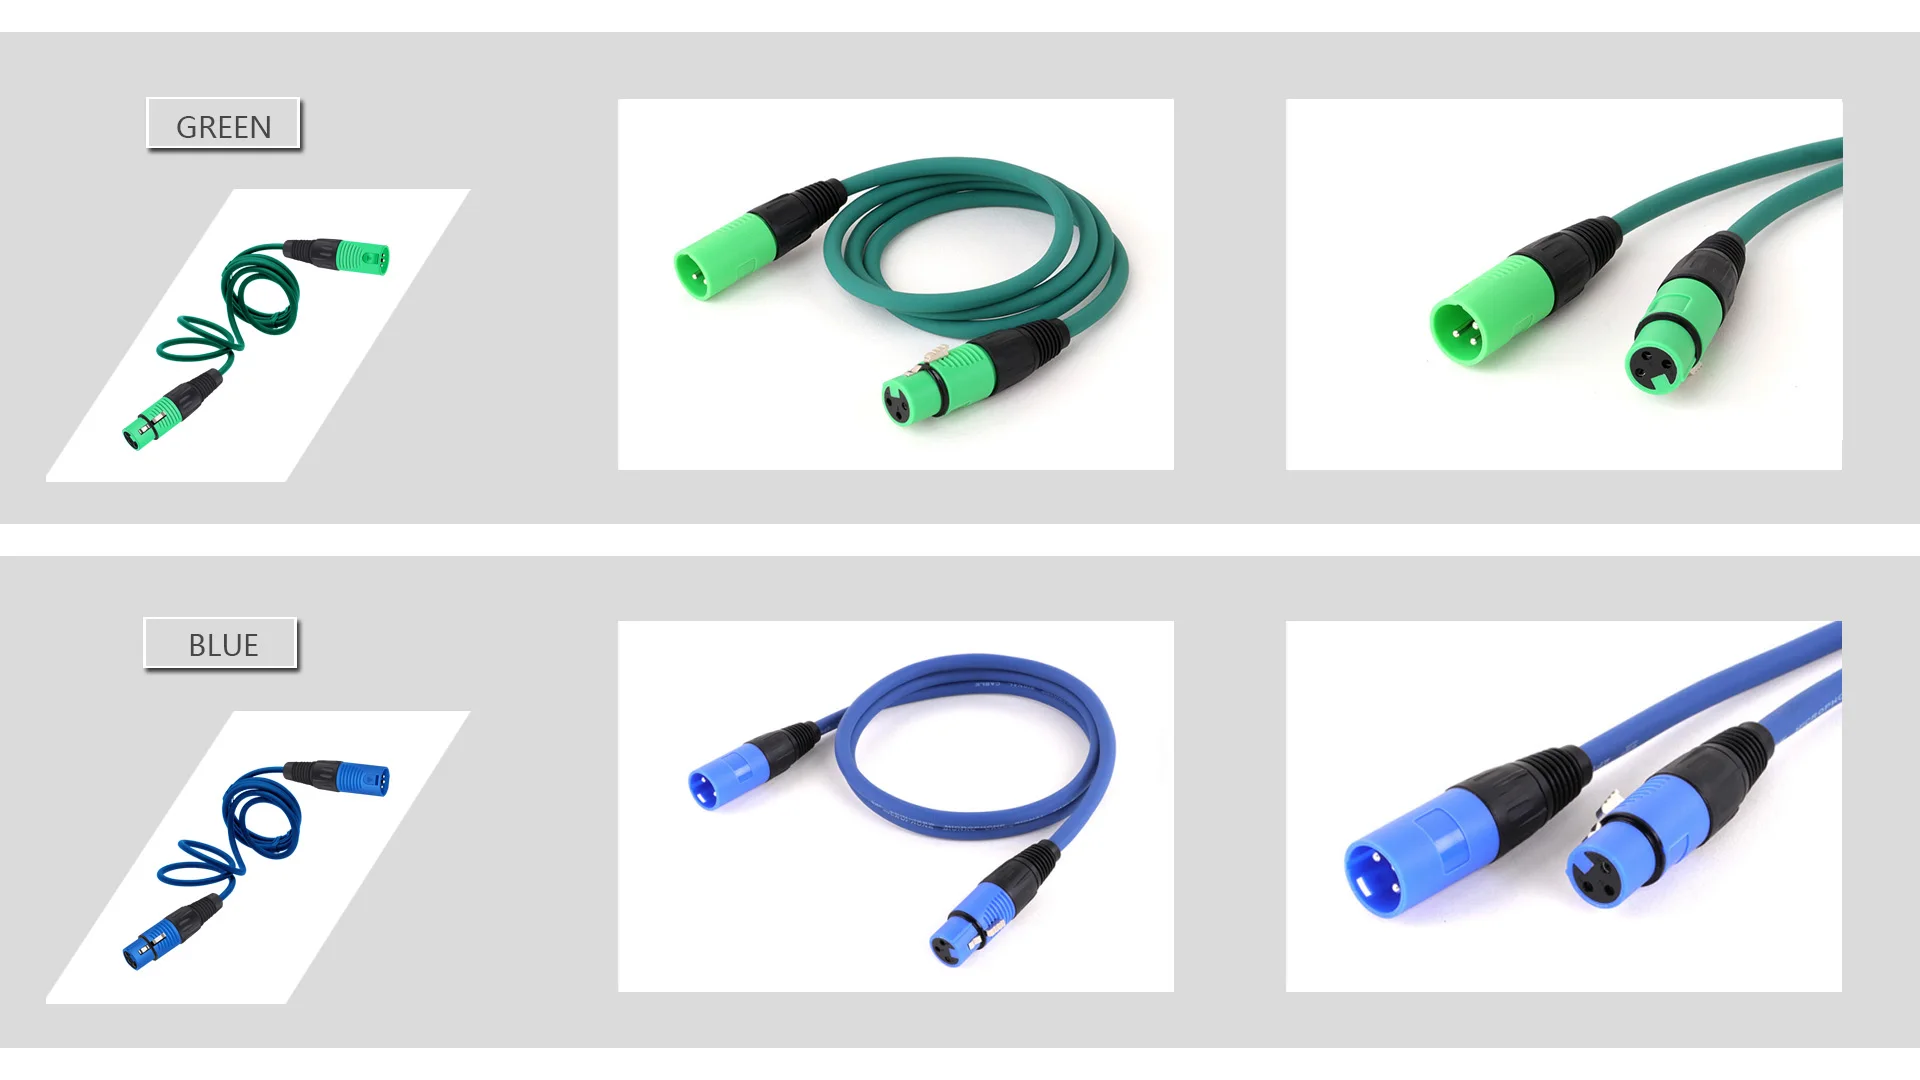 S69241c042dbf425489a8d2e2f800ced7p 1PC 3Pin XLR Cable Male to Female Plastic Plug OFC Copper Shielded For Mixer Microphone Amplifier 0.3m 1m 2m 3m 5m 8m 10m 15m